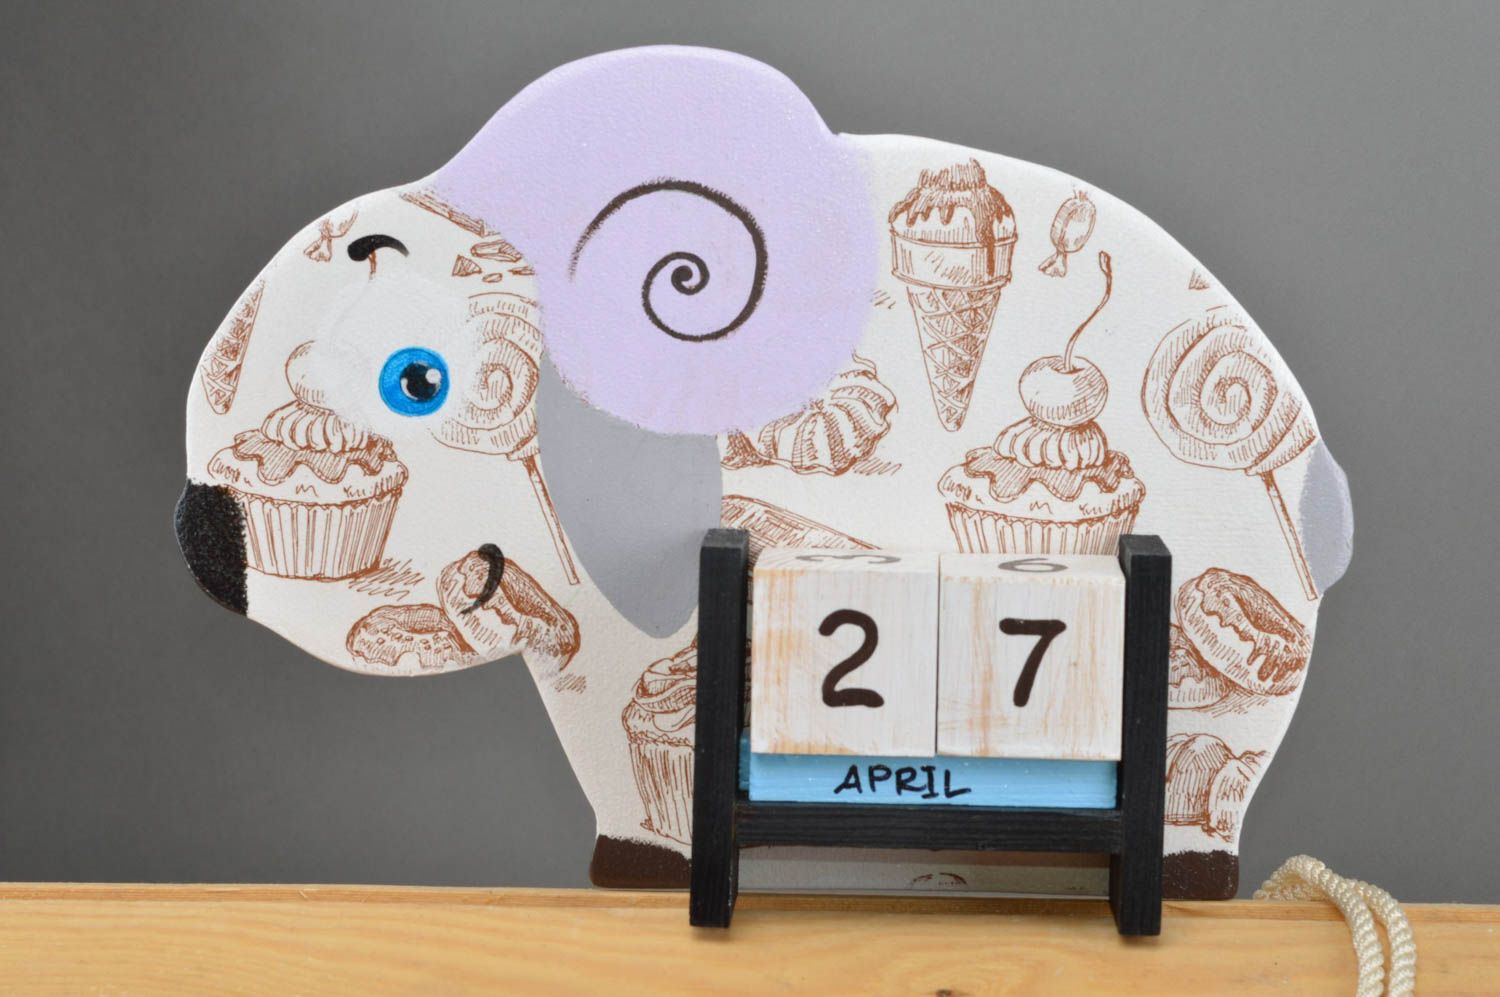 Детский календарь в виде барашка из фанеры декупаж со сладостями ручной работы фото 2